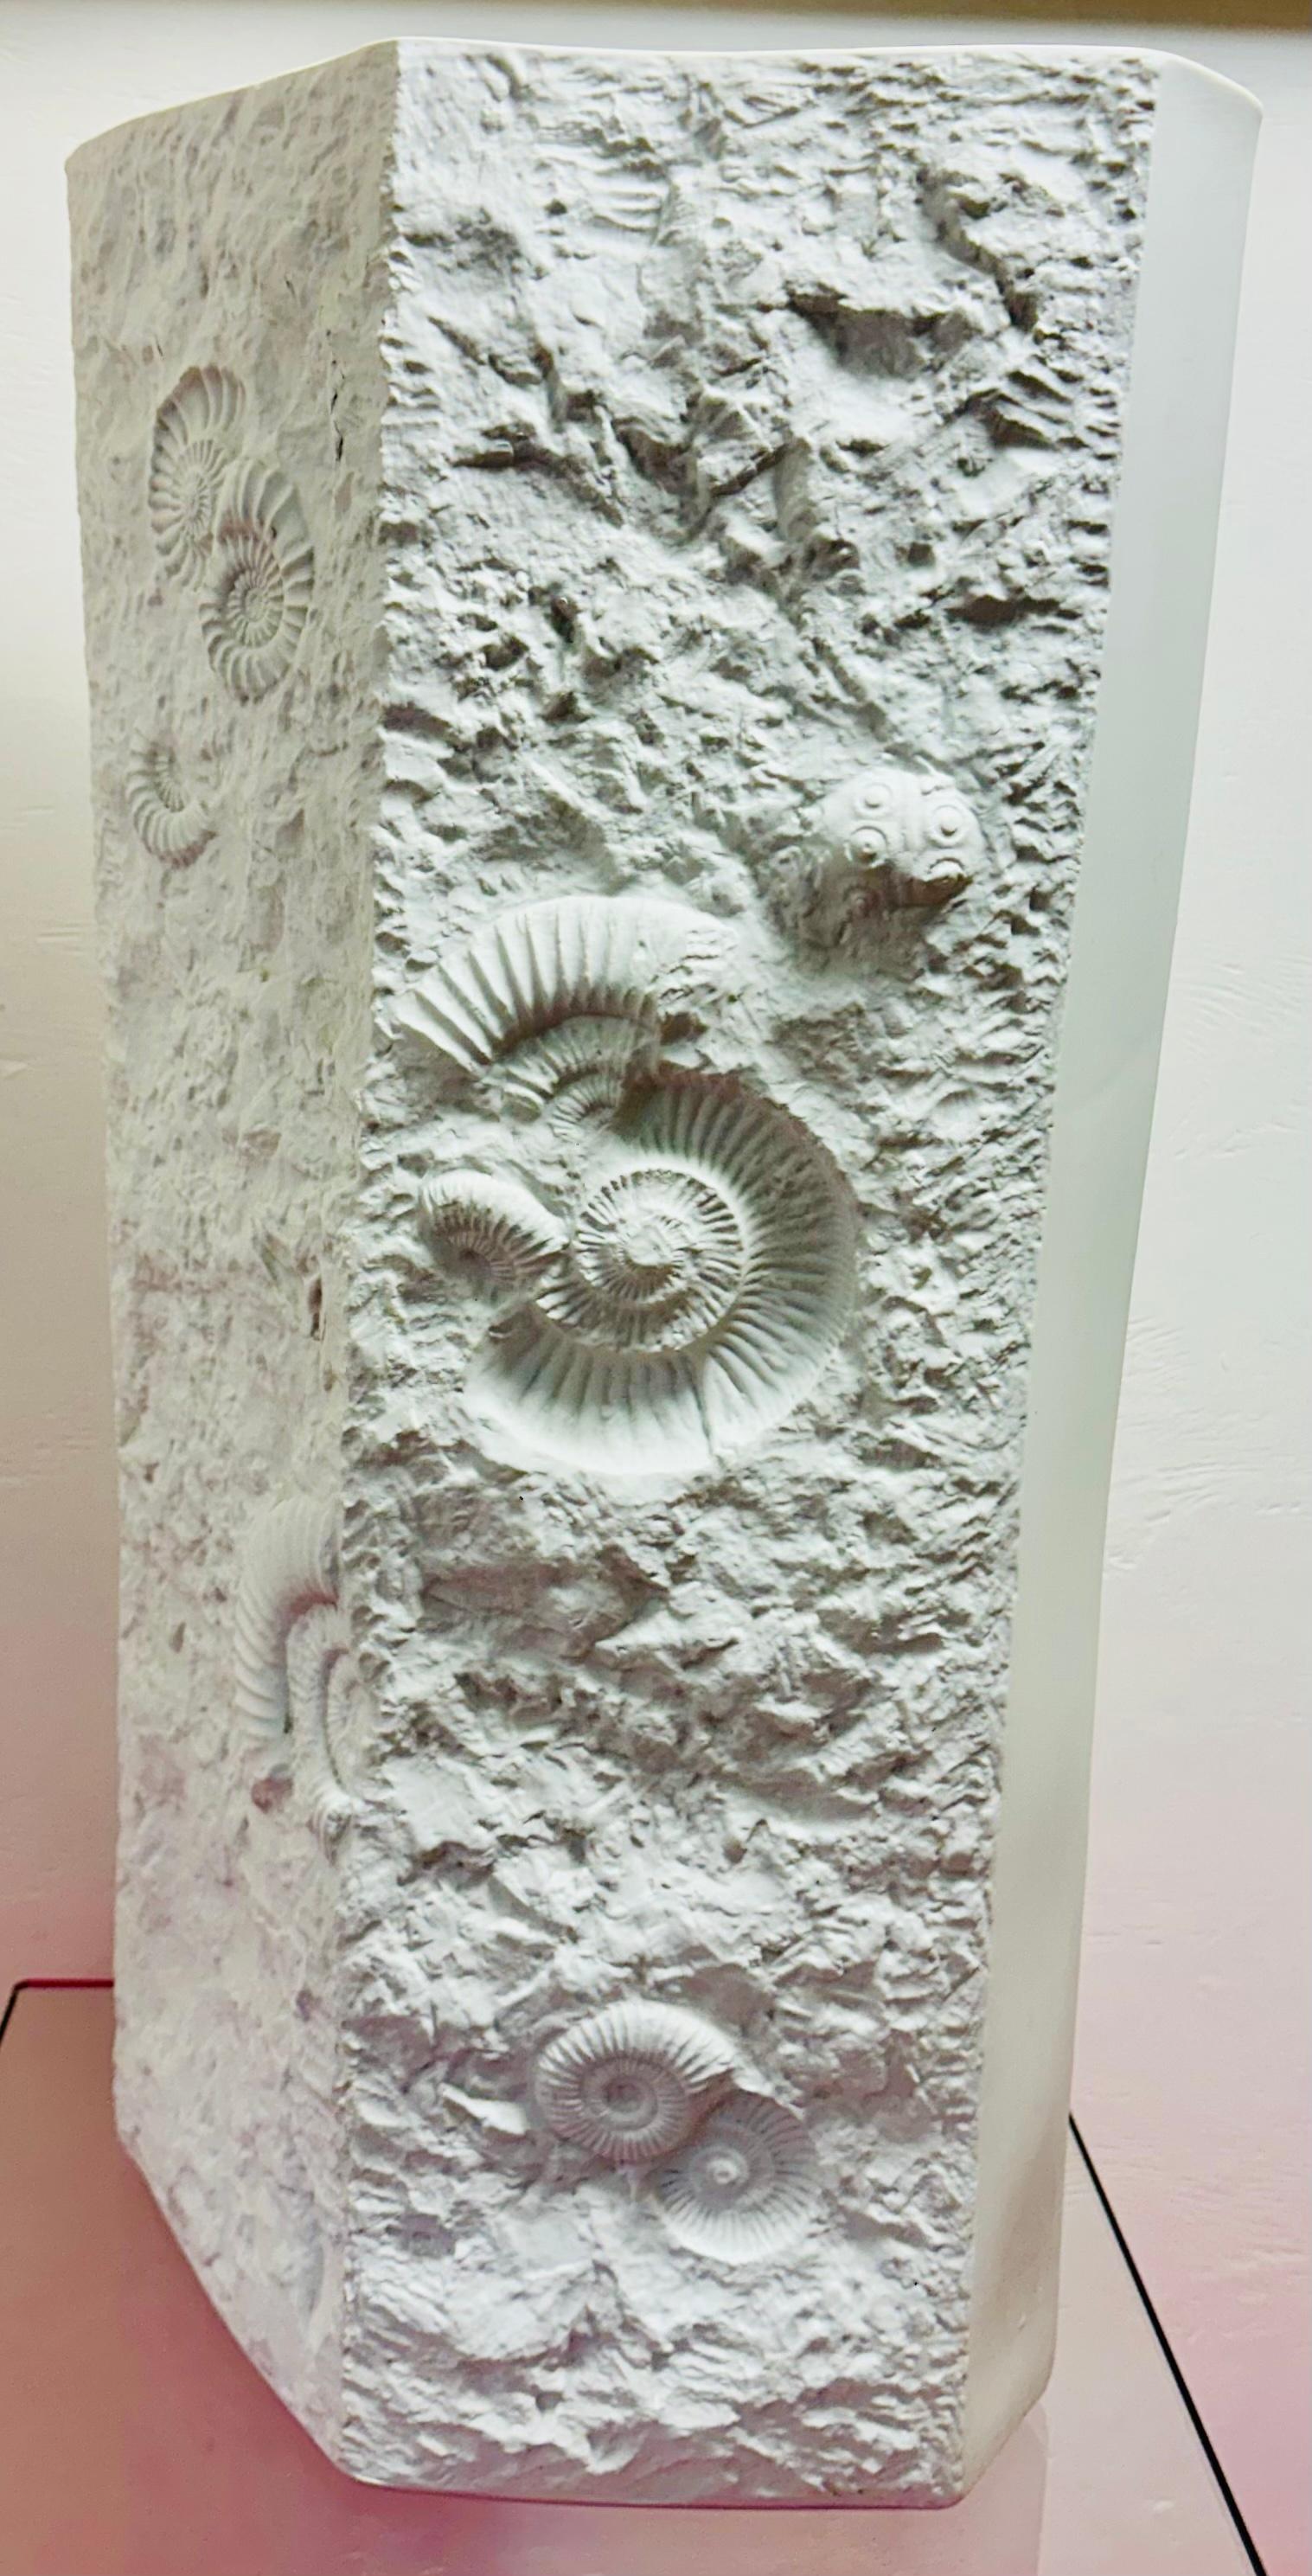 Vaso in porcellana bianca opaca di bisquit, molto grande, con un interessante disegno fossile in rilievo. Prodotto da AK Kaiser in Germania negli anni Settanta.  Un design tridimensionale assolutamente straordinario con una superficie astratta e